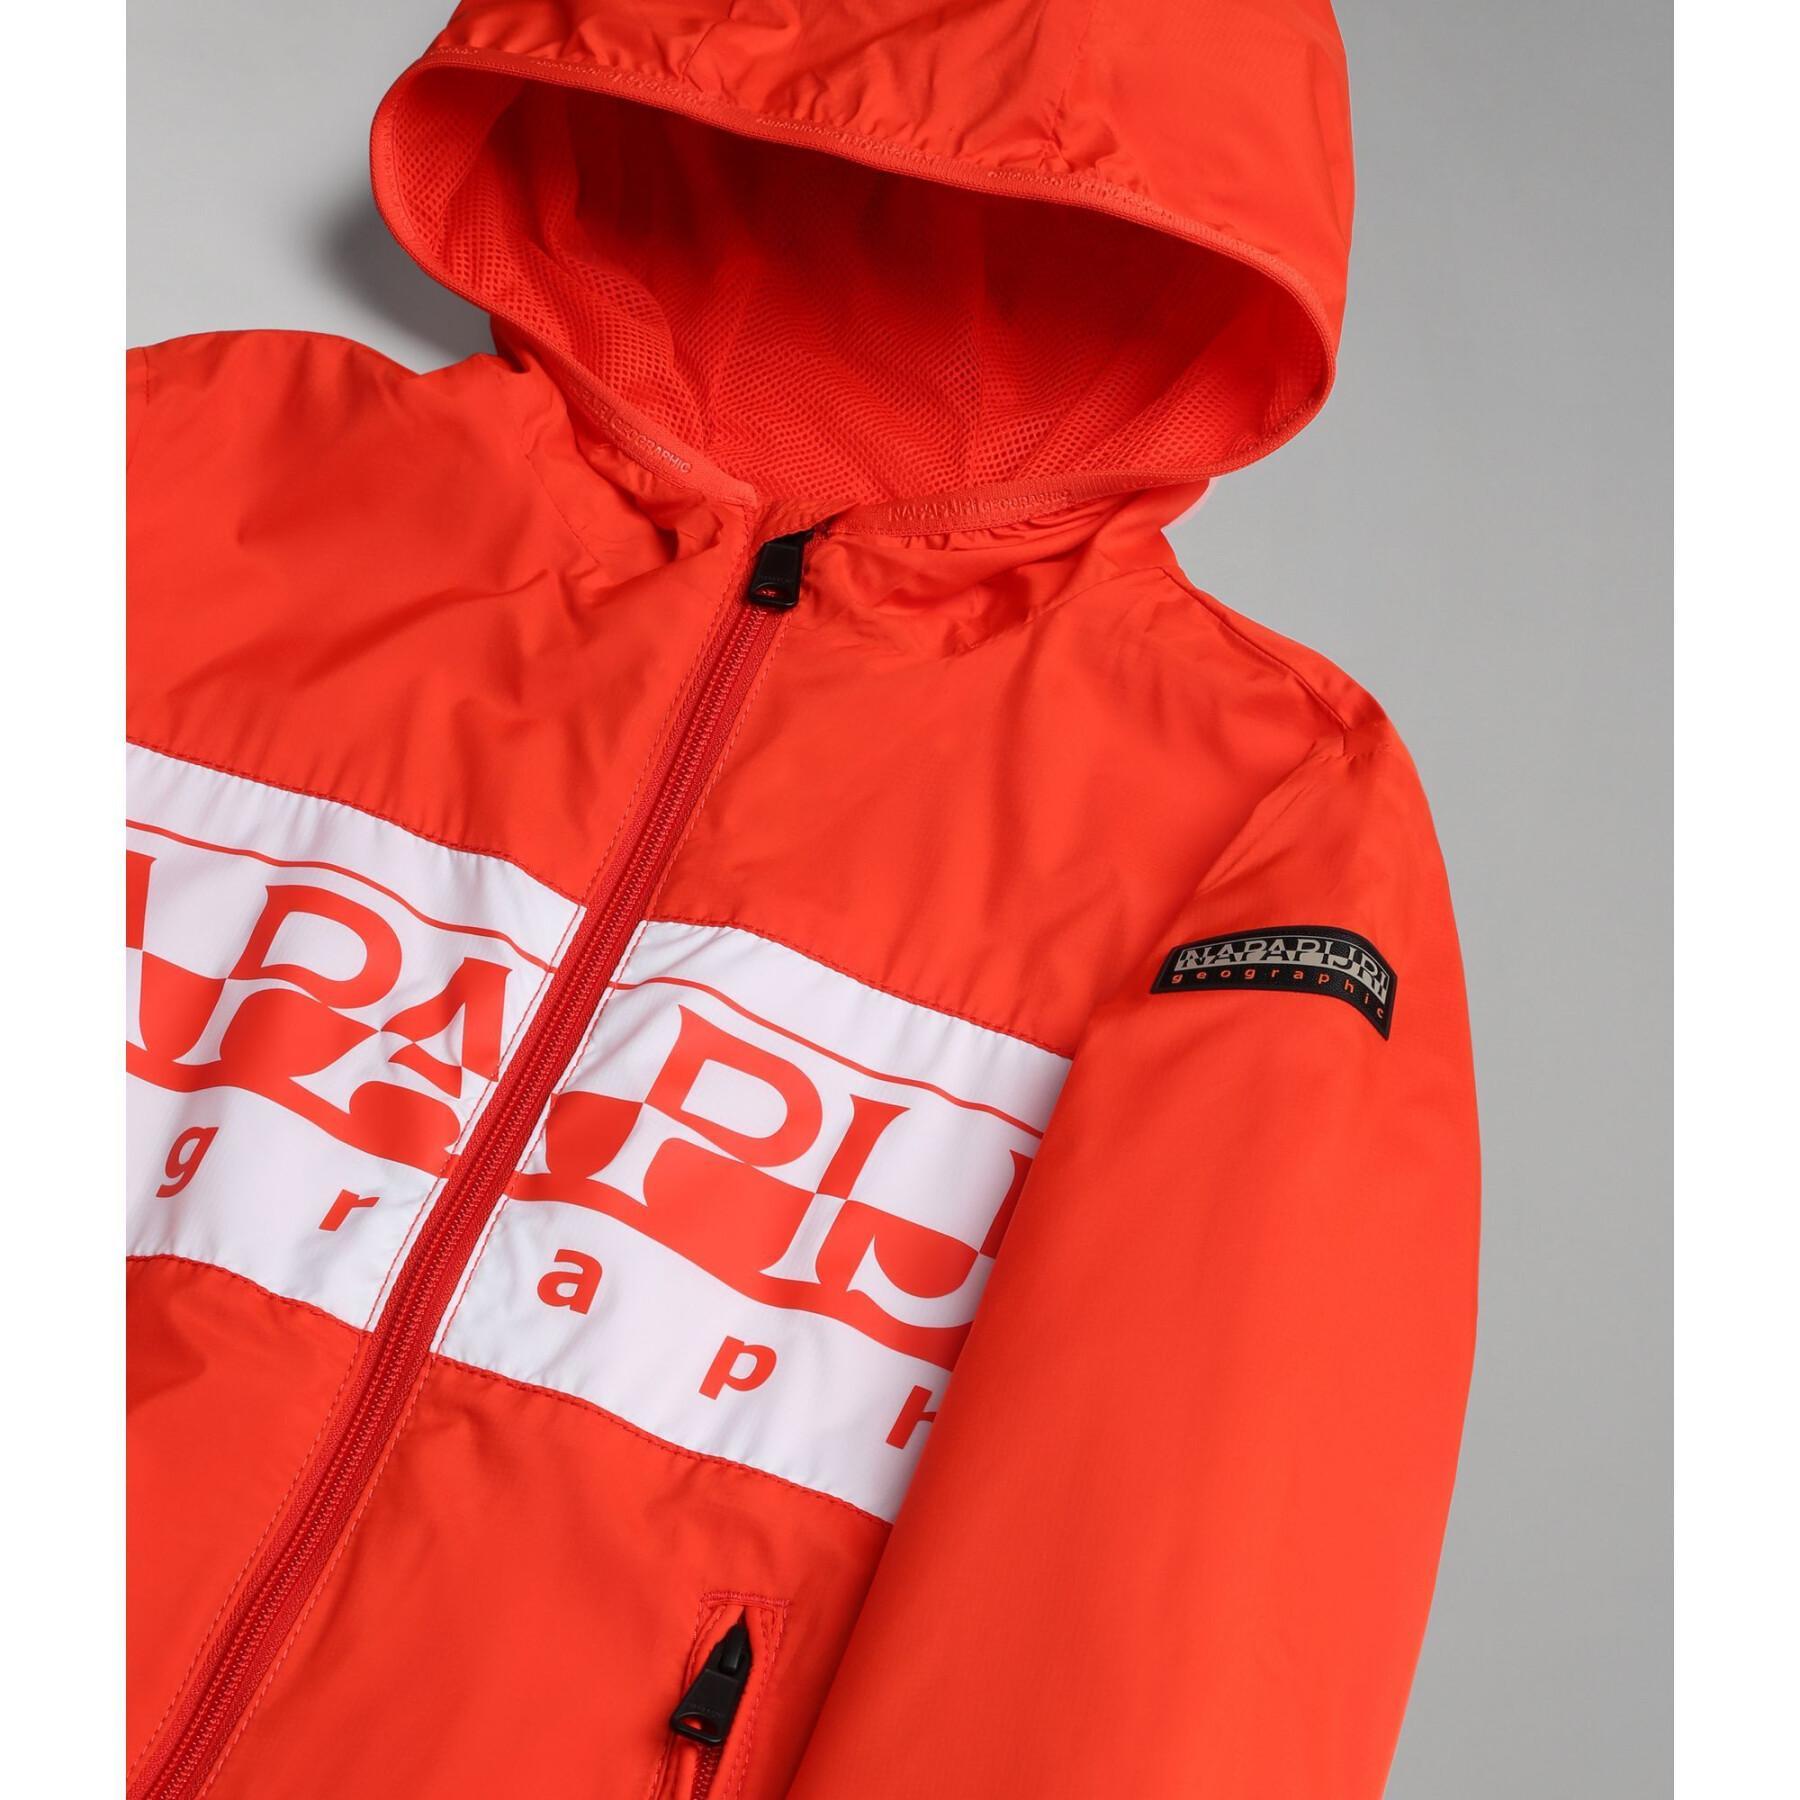 Waterproof jacket for children Napapijri Baltra